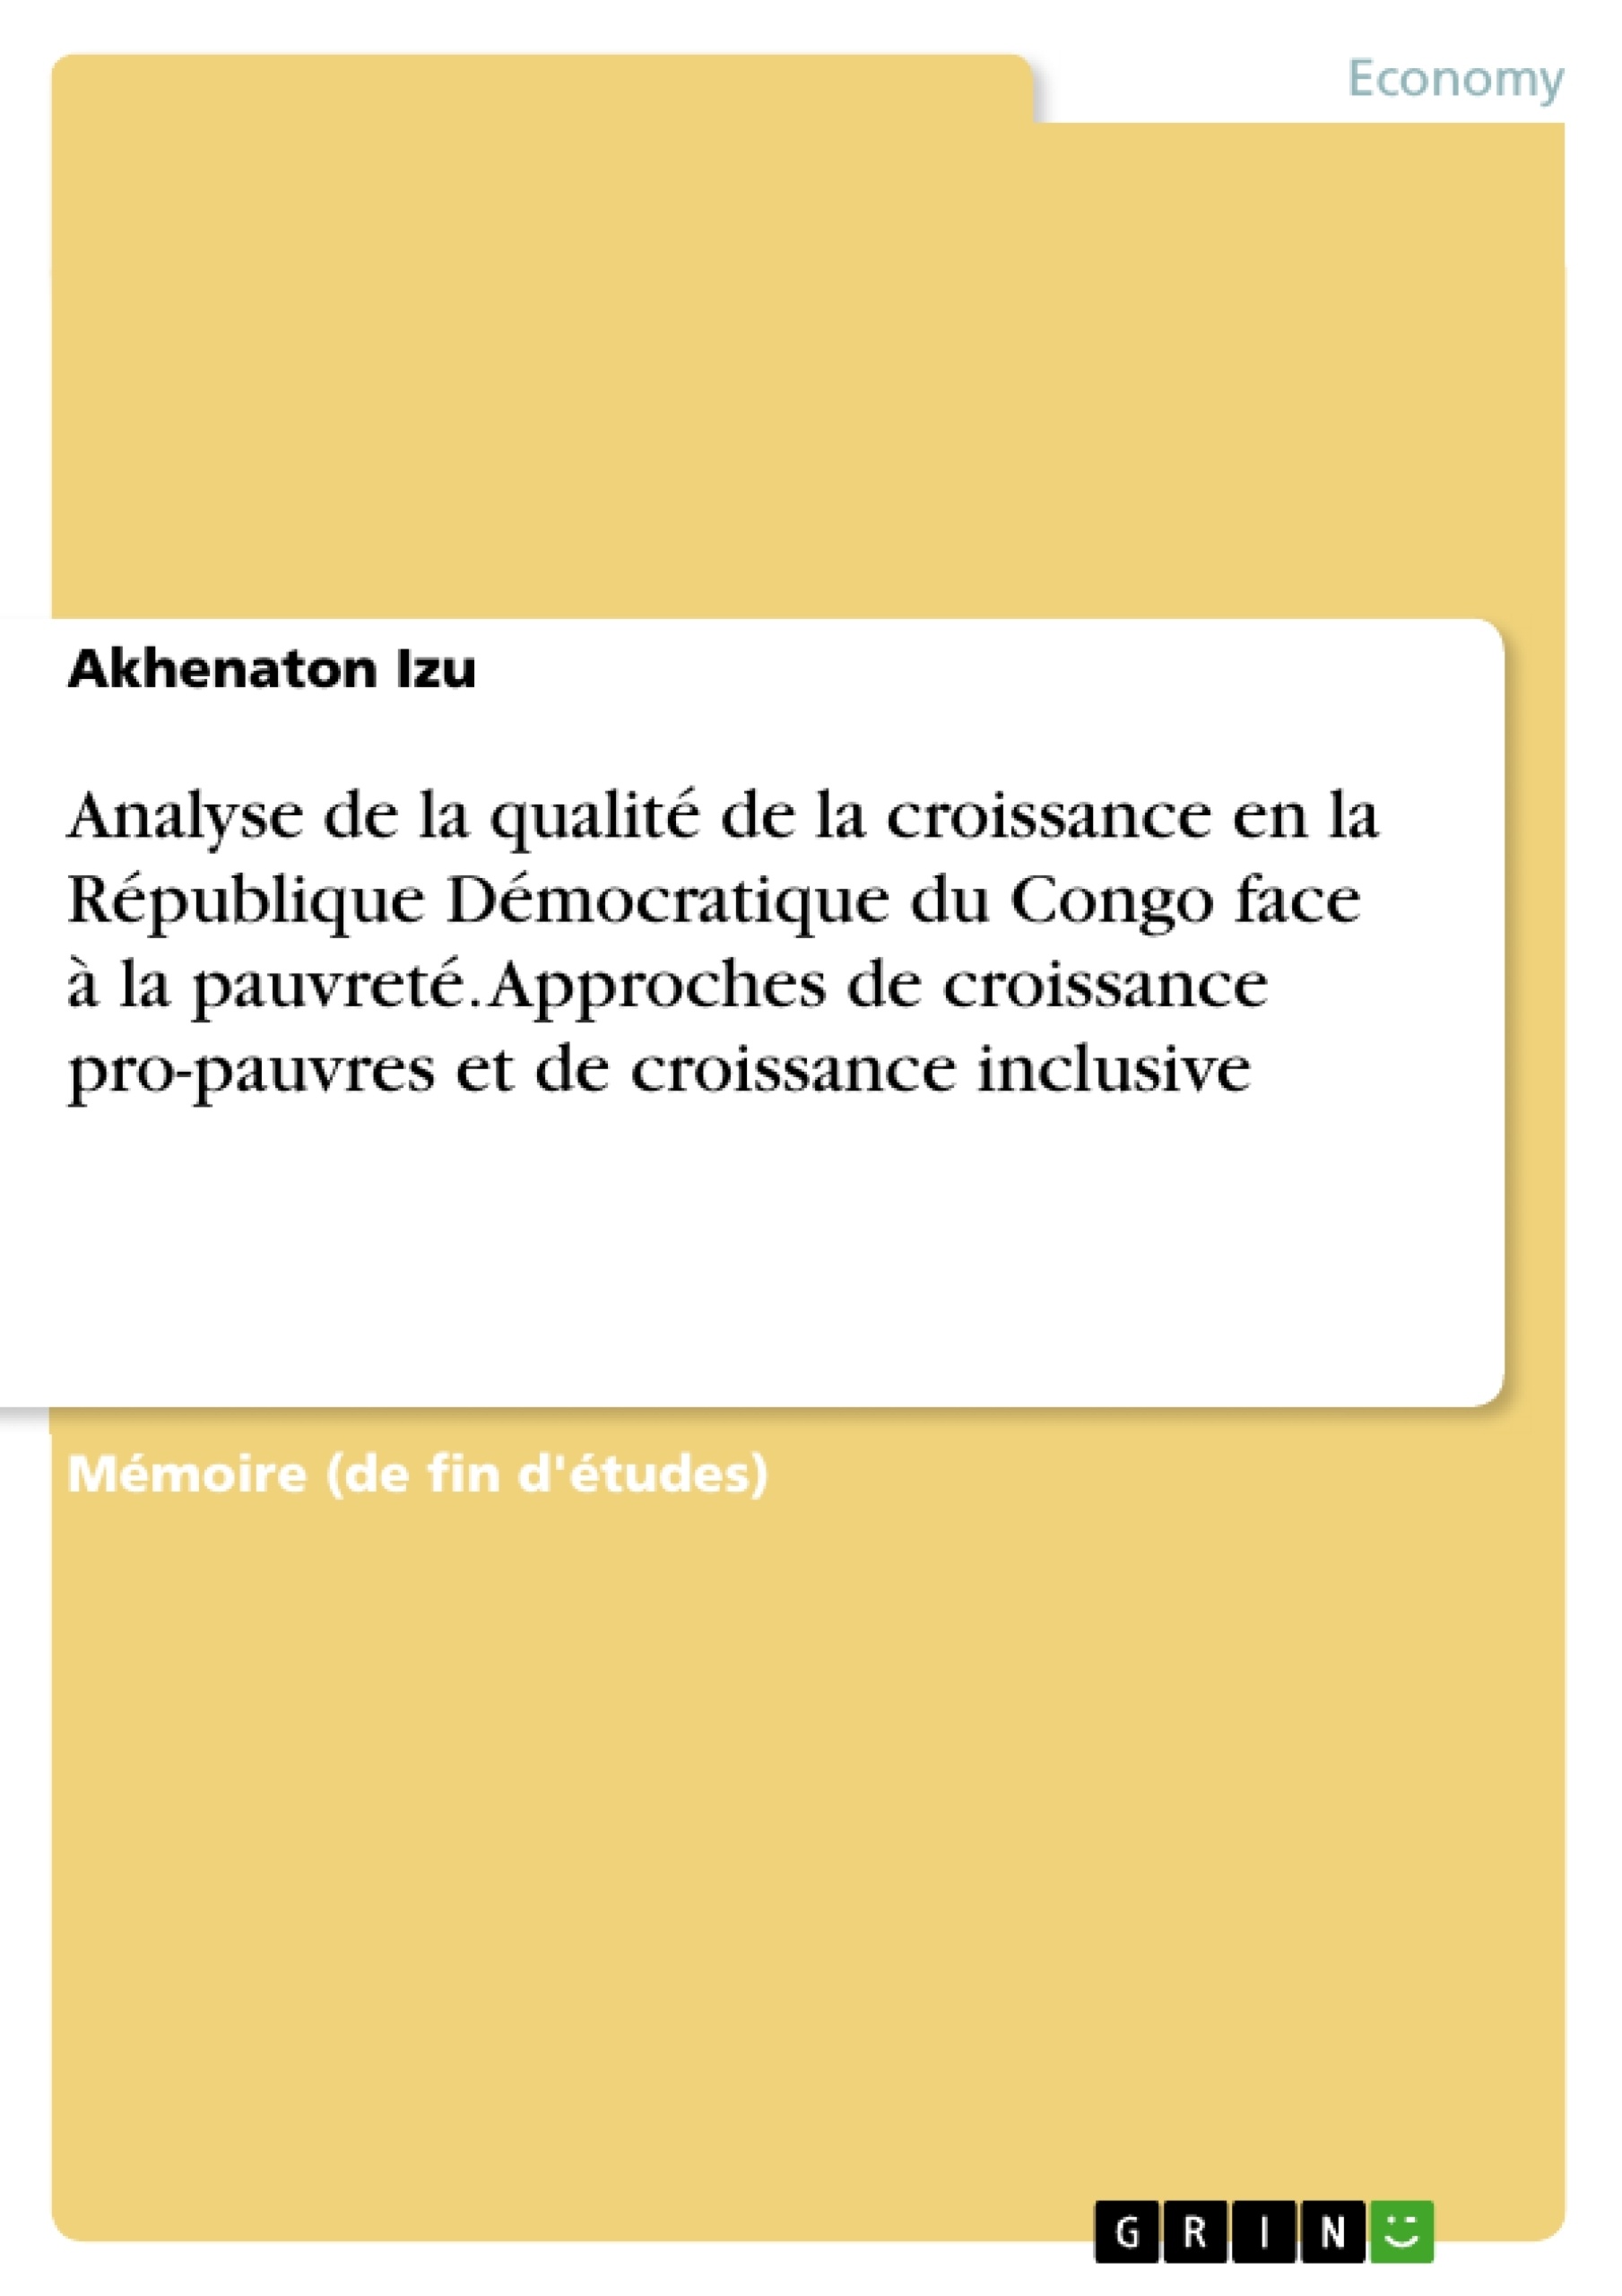 Título: Analyse de la qualité de la croissance en la République Démocratique du Congo face à la pauvreté. Approches de croissance pro-pauvres et de croissance inclusive